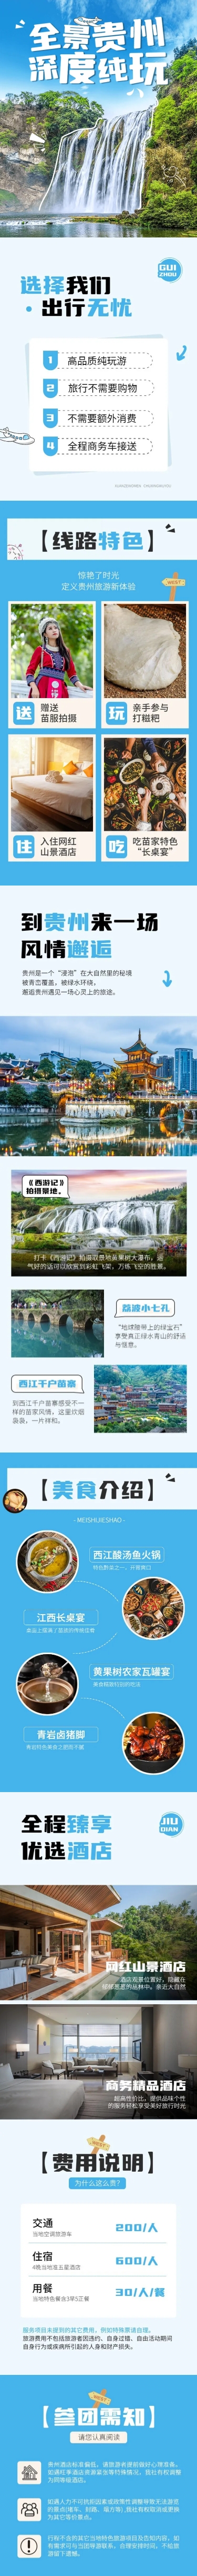 旅游出行贵州线路营销详情页预览效果